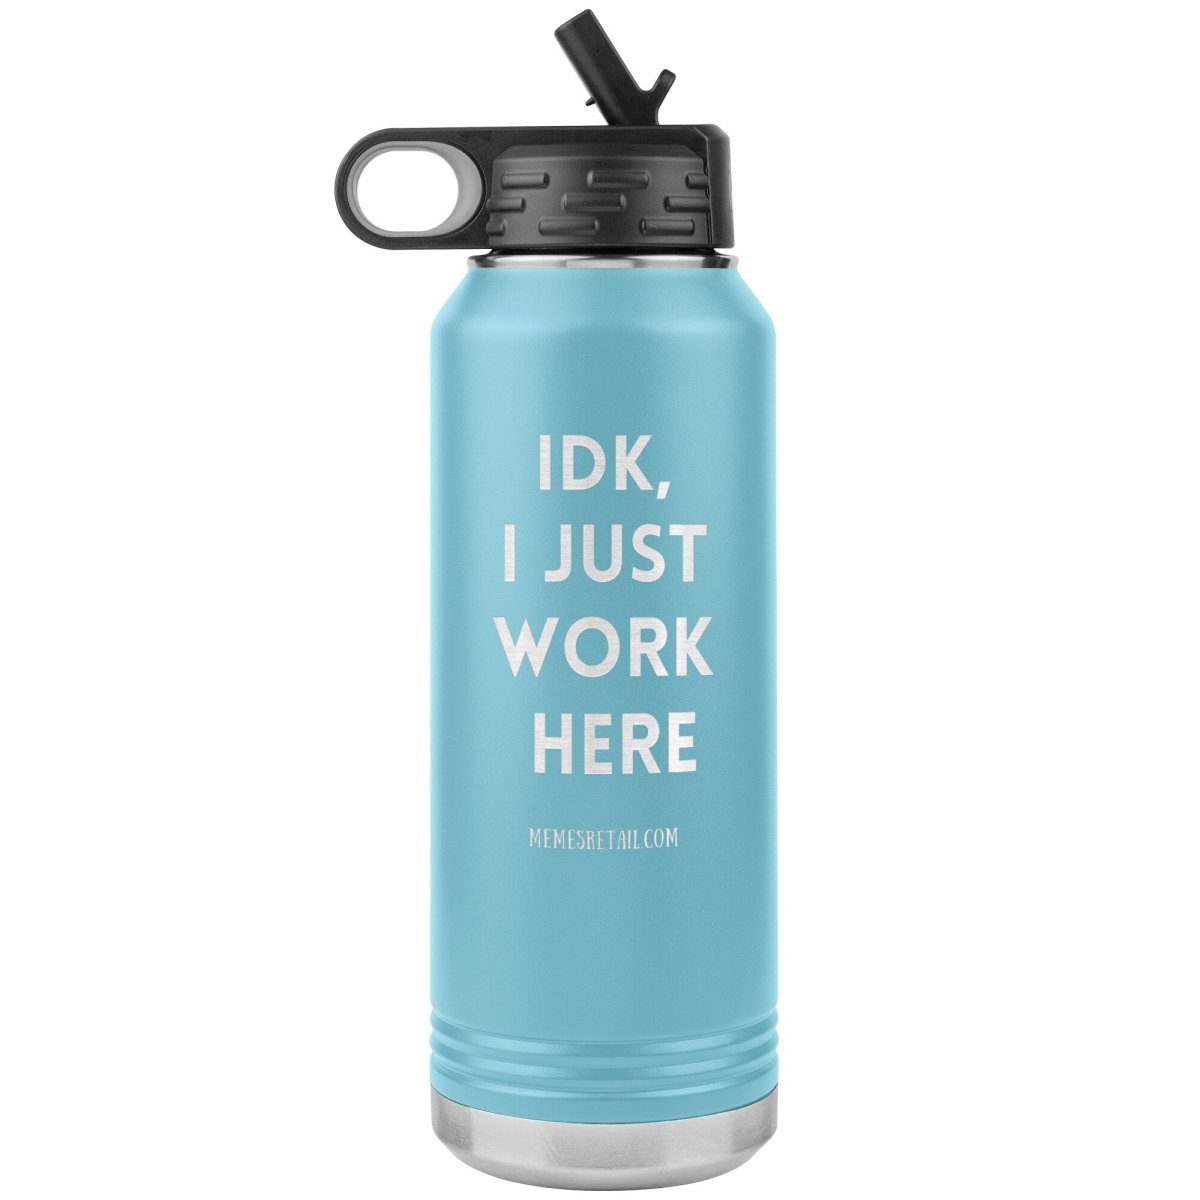 IDK, I Just Work Here 32 oz Stainless Steel Water Bottle Tumbler, Light Blue - MemesRetail.com